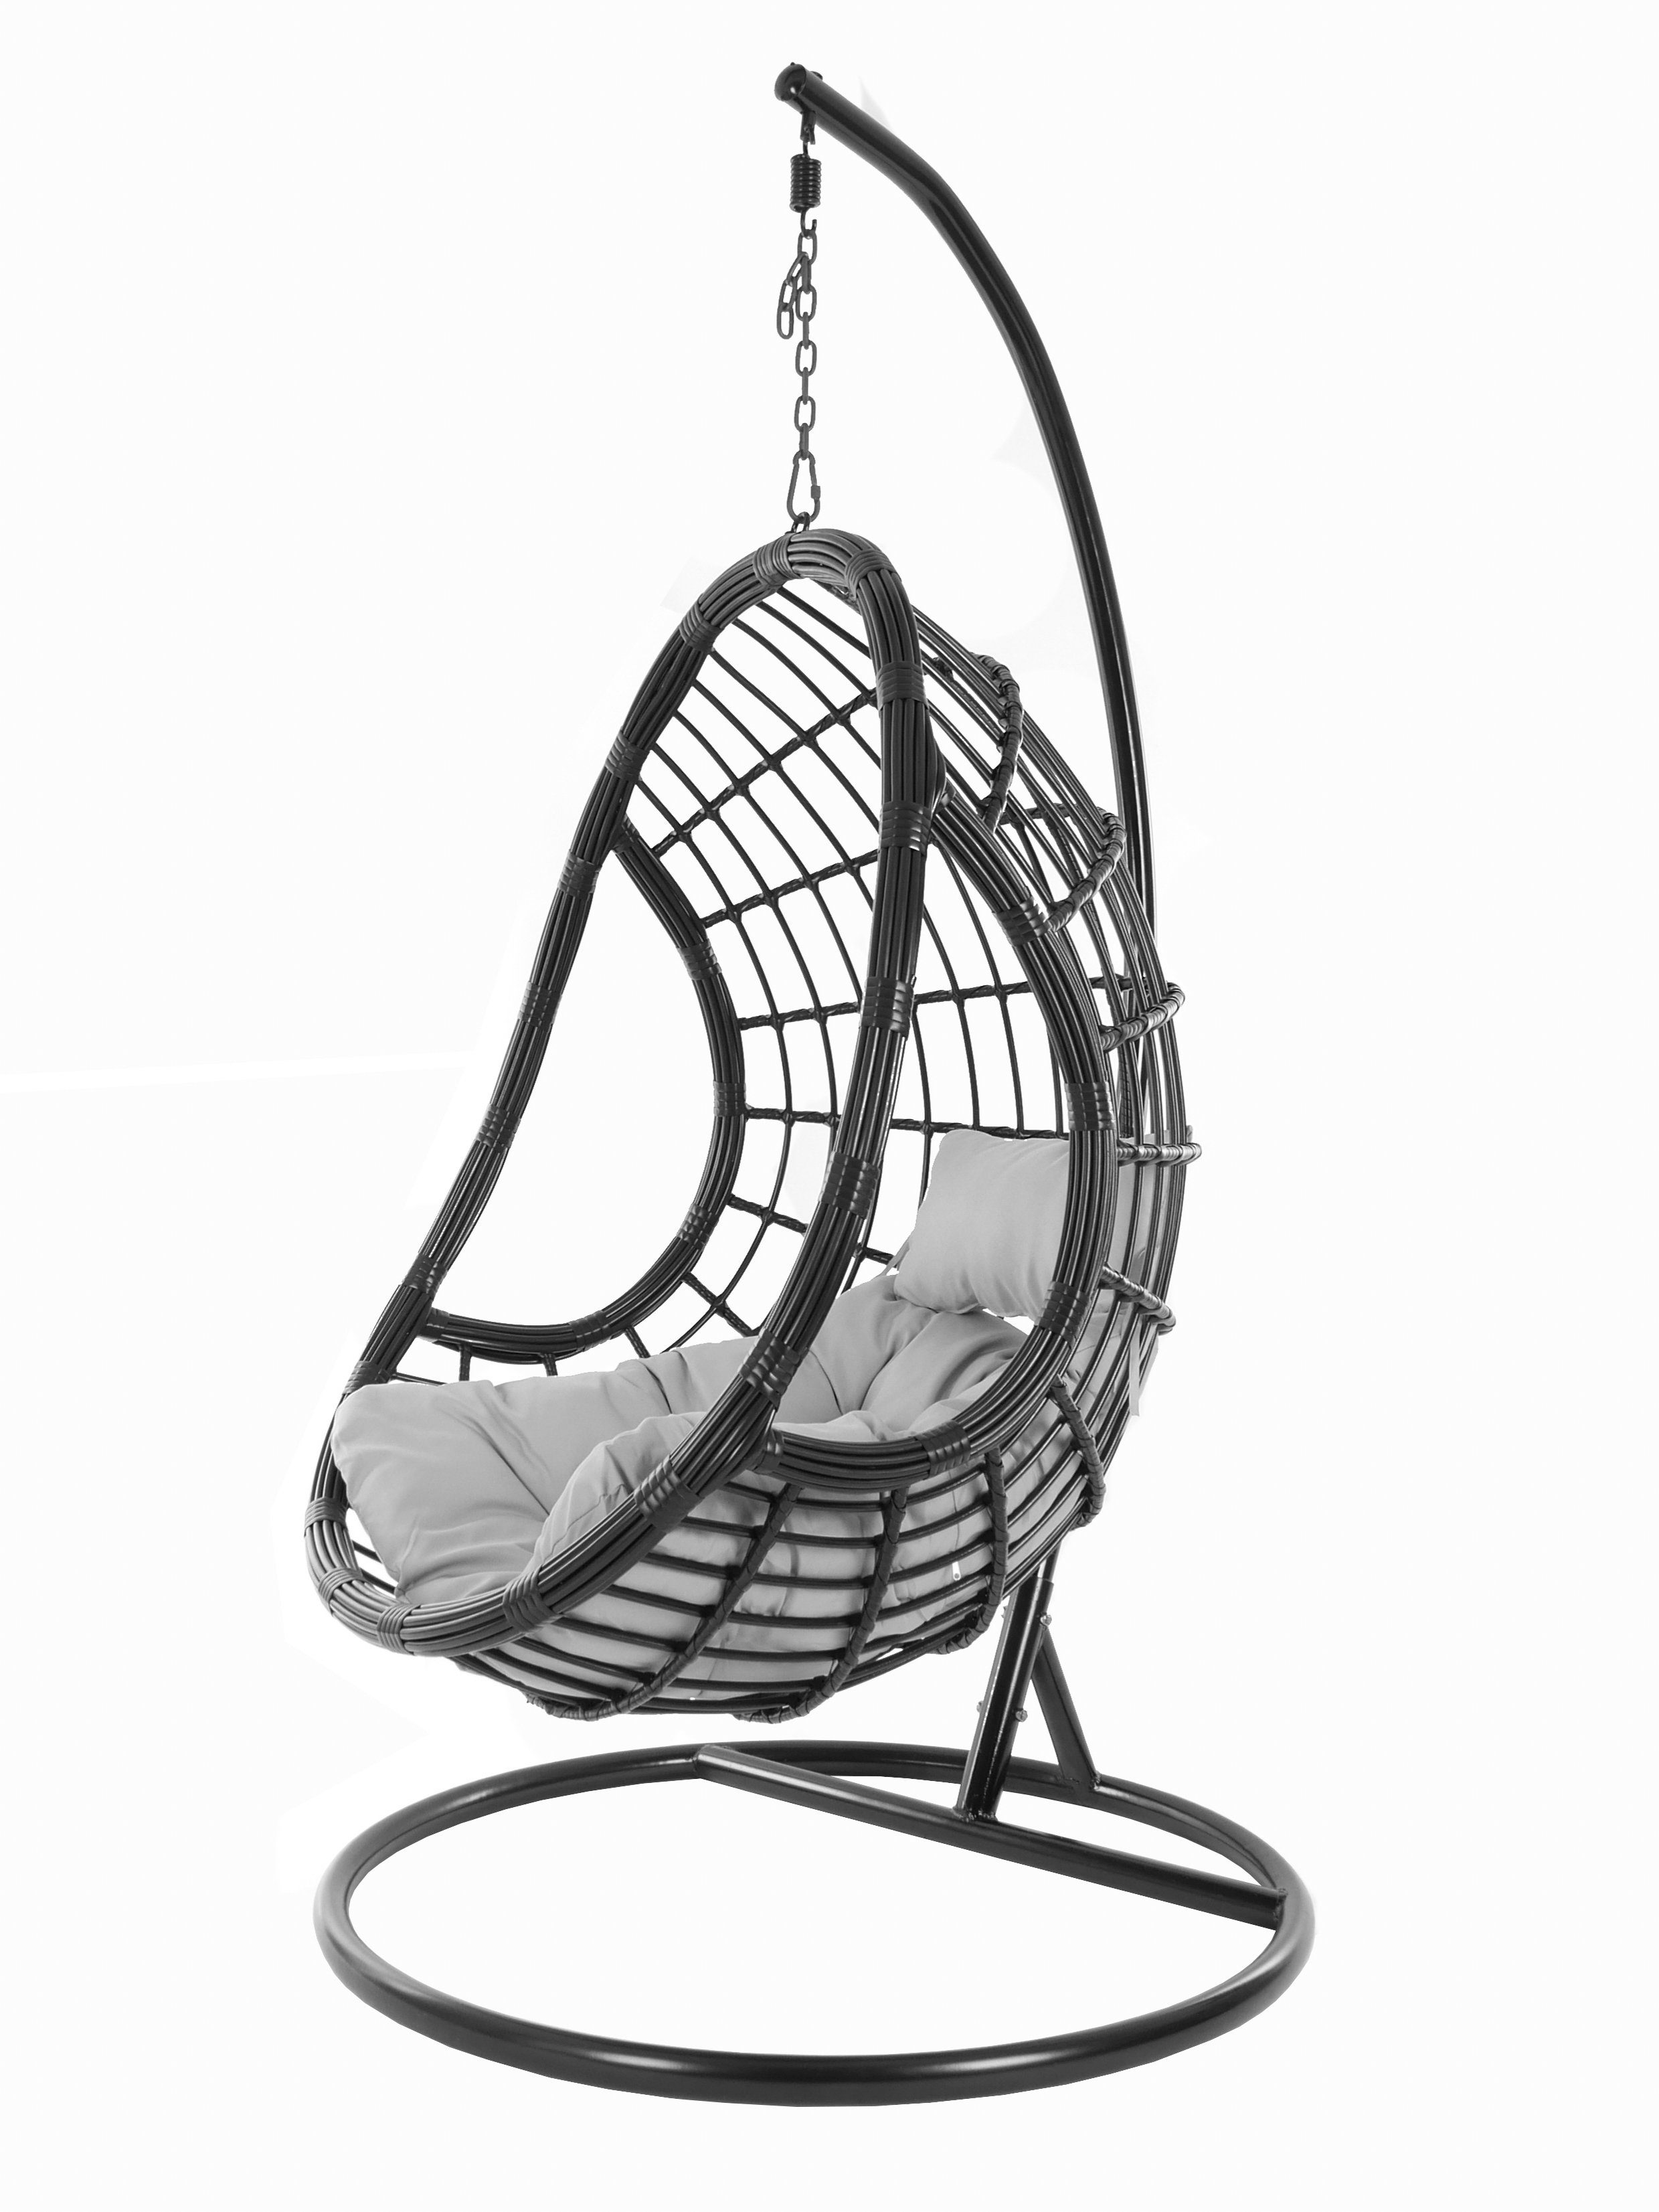 KIDEO Hängesessel und Chair, Hängesessel Design Kissen, Loungemöbel, grau Gestell mit (8008 Swing edles cloud) PALMANOVA Schwebesessel, black, schwarz